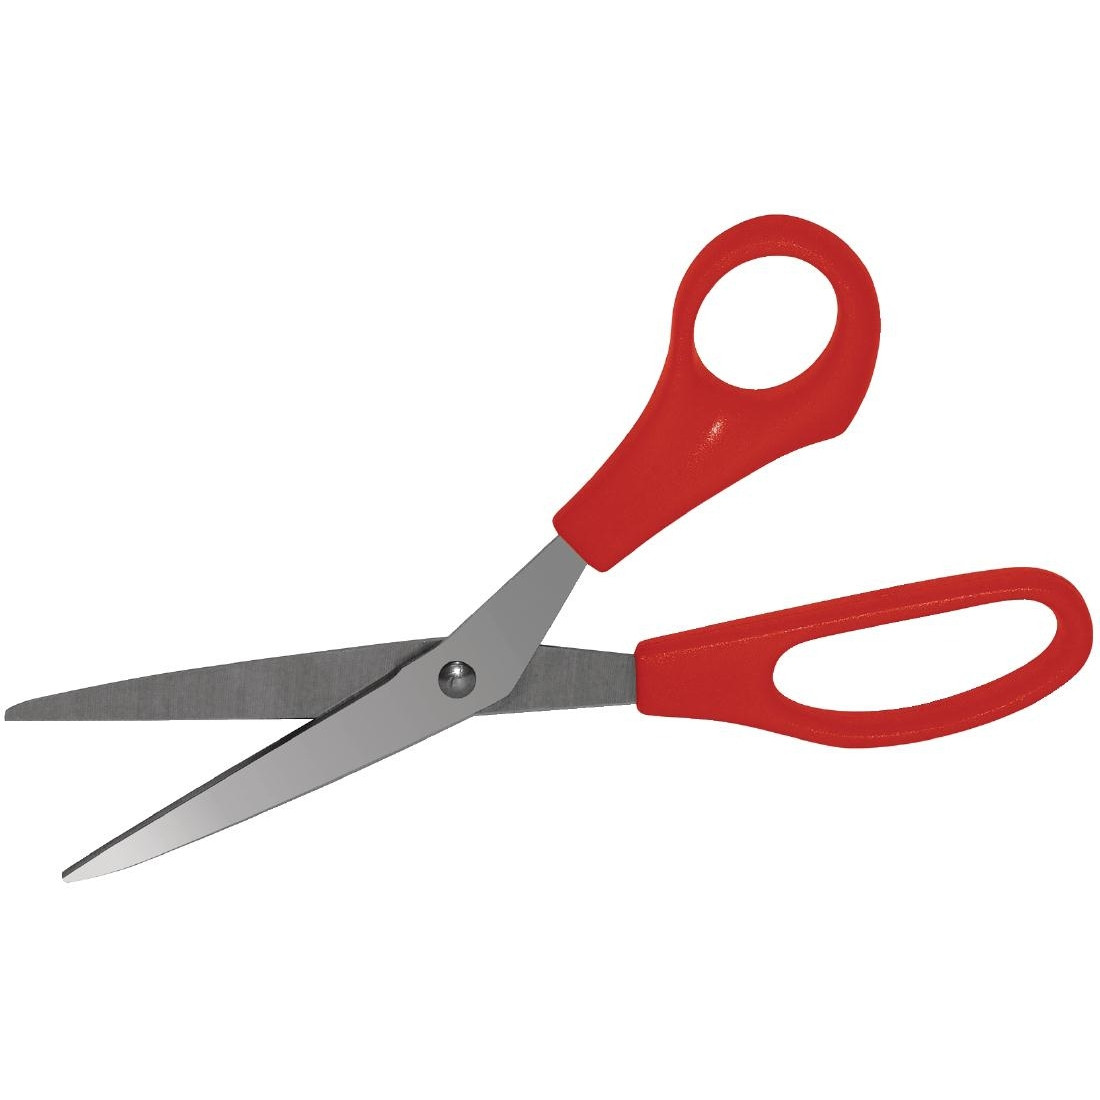 Scissoring scissoring